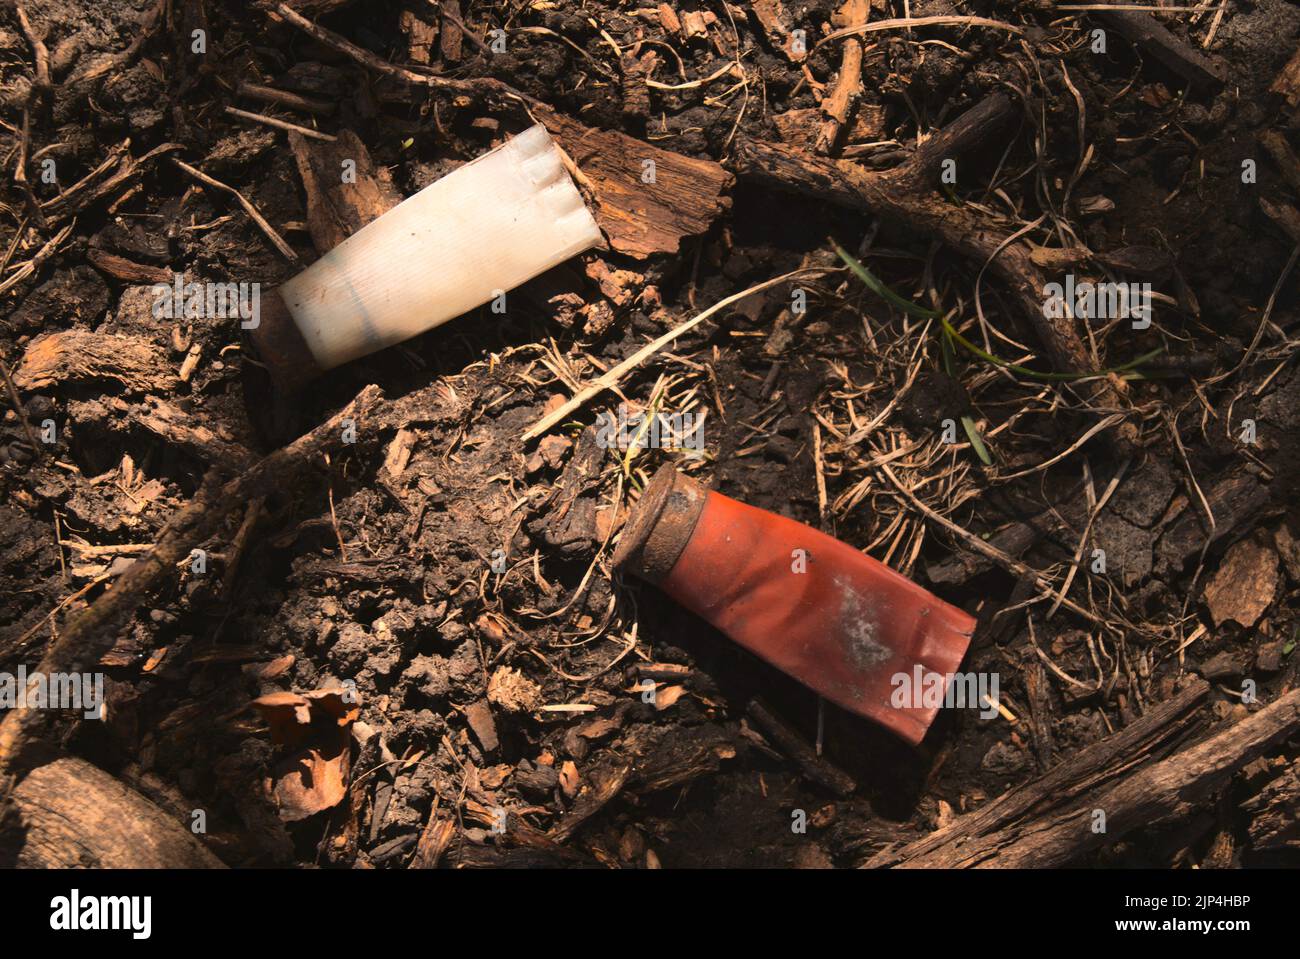 Un paio di vecchie conchiglie arrugginite sparse tra sporcizia e rami caduti sul terreno in una foresta Foto Stock